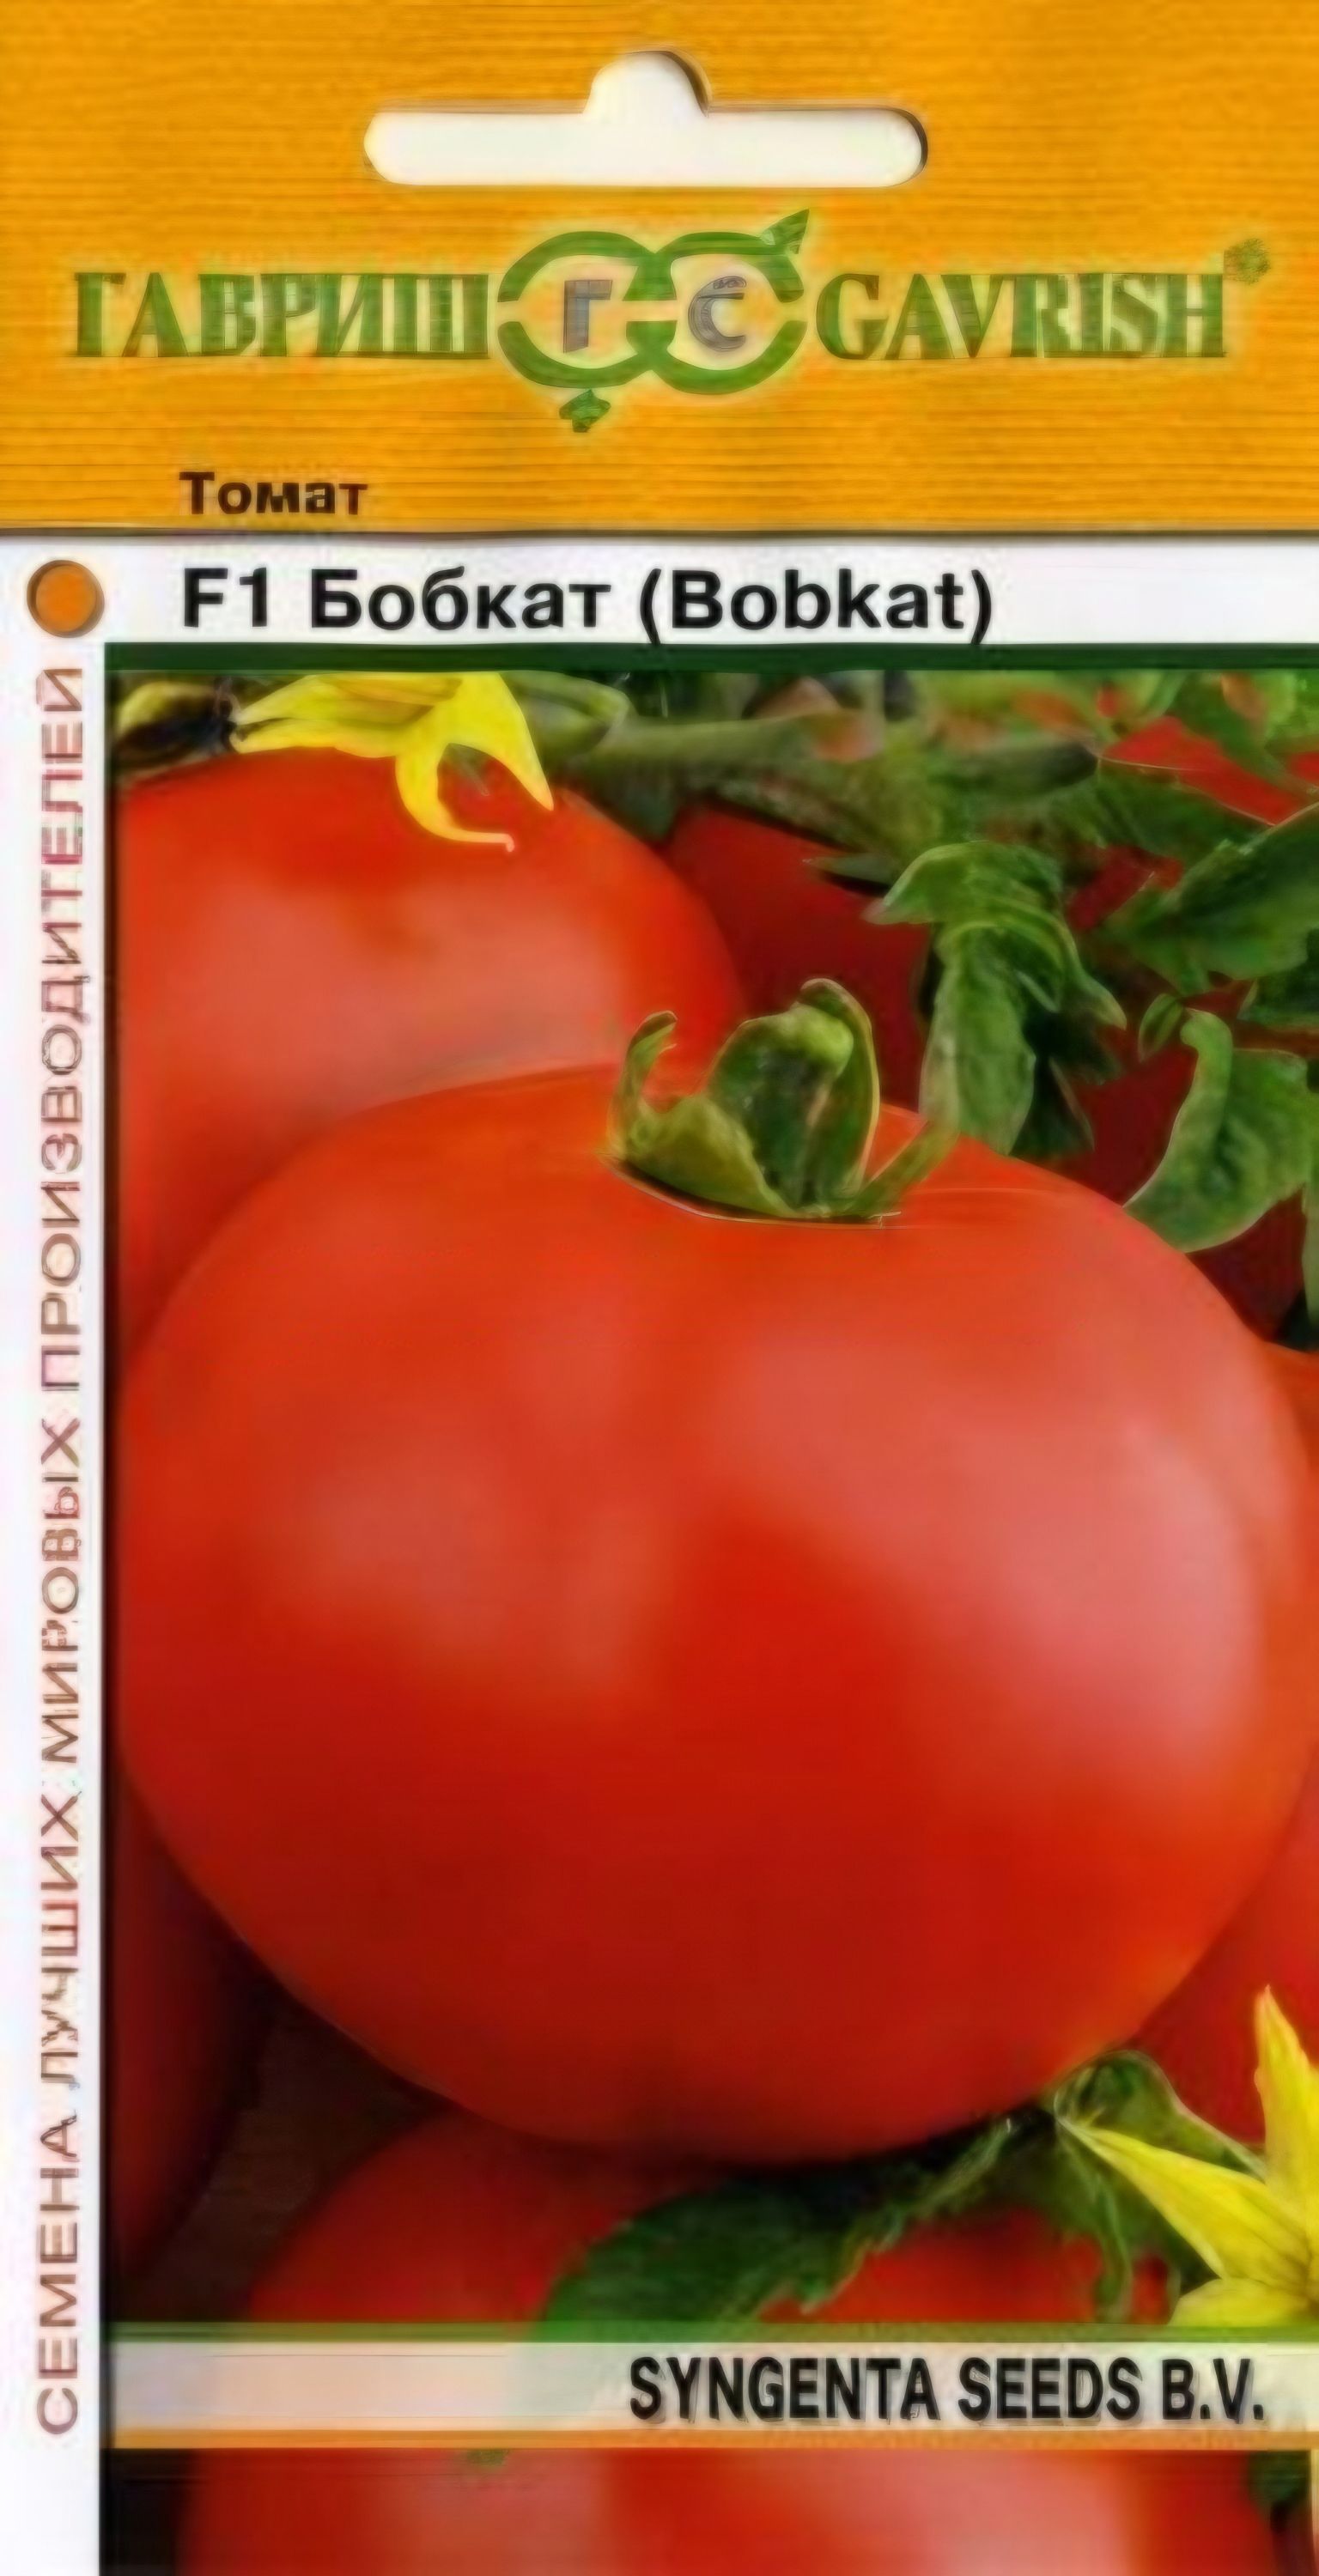 Урожайность томата бобкат